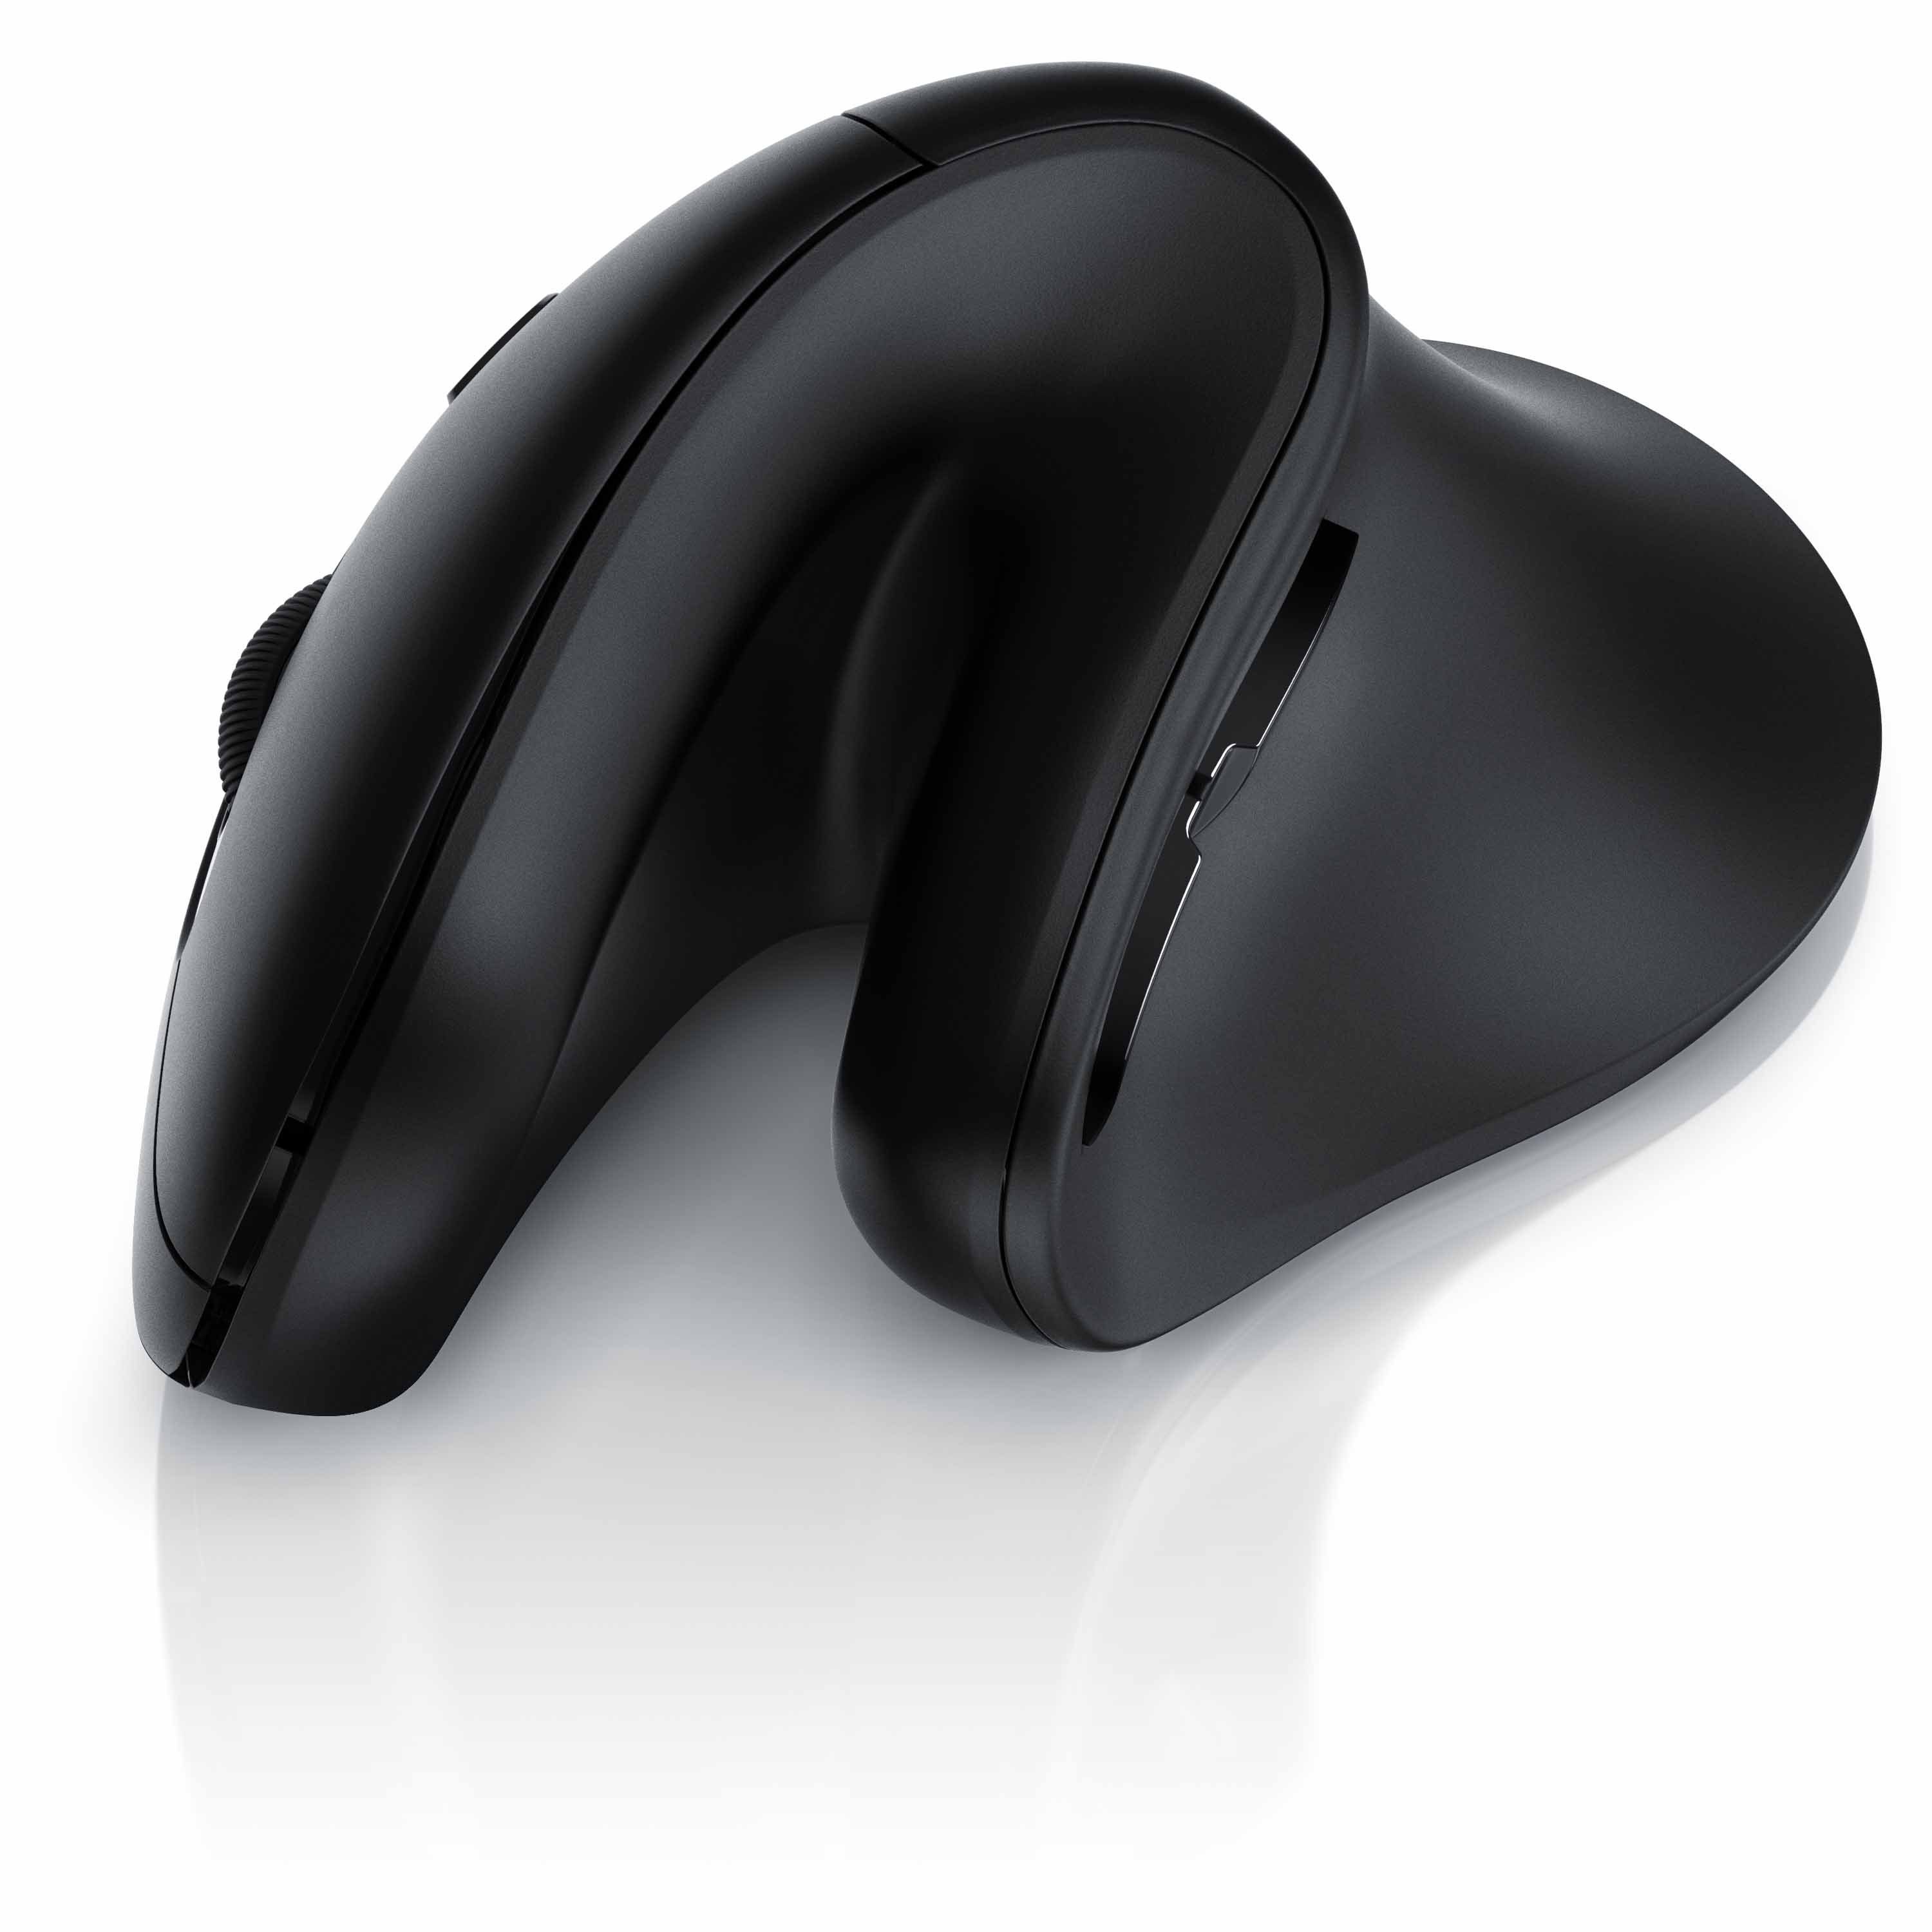 CSL ergonomische Maus Bluetooth, Funk, Mouse (Bluetooth, & Ghz 2,4 Armschonend) Vertikal kabellose optische